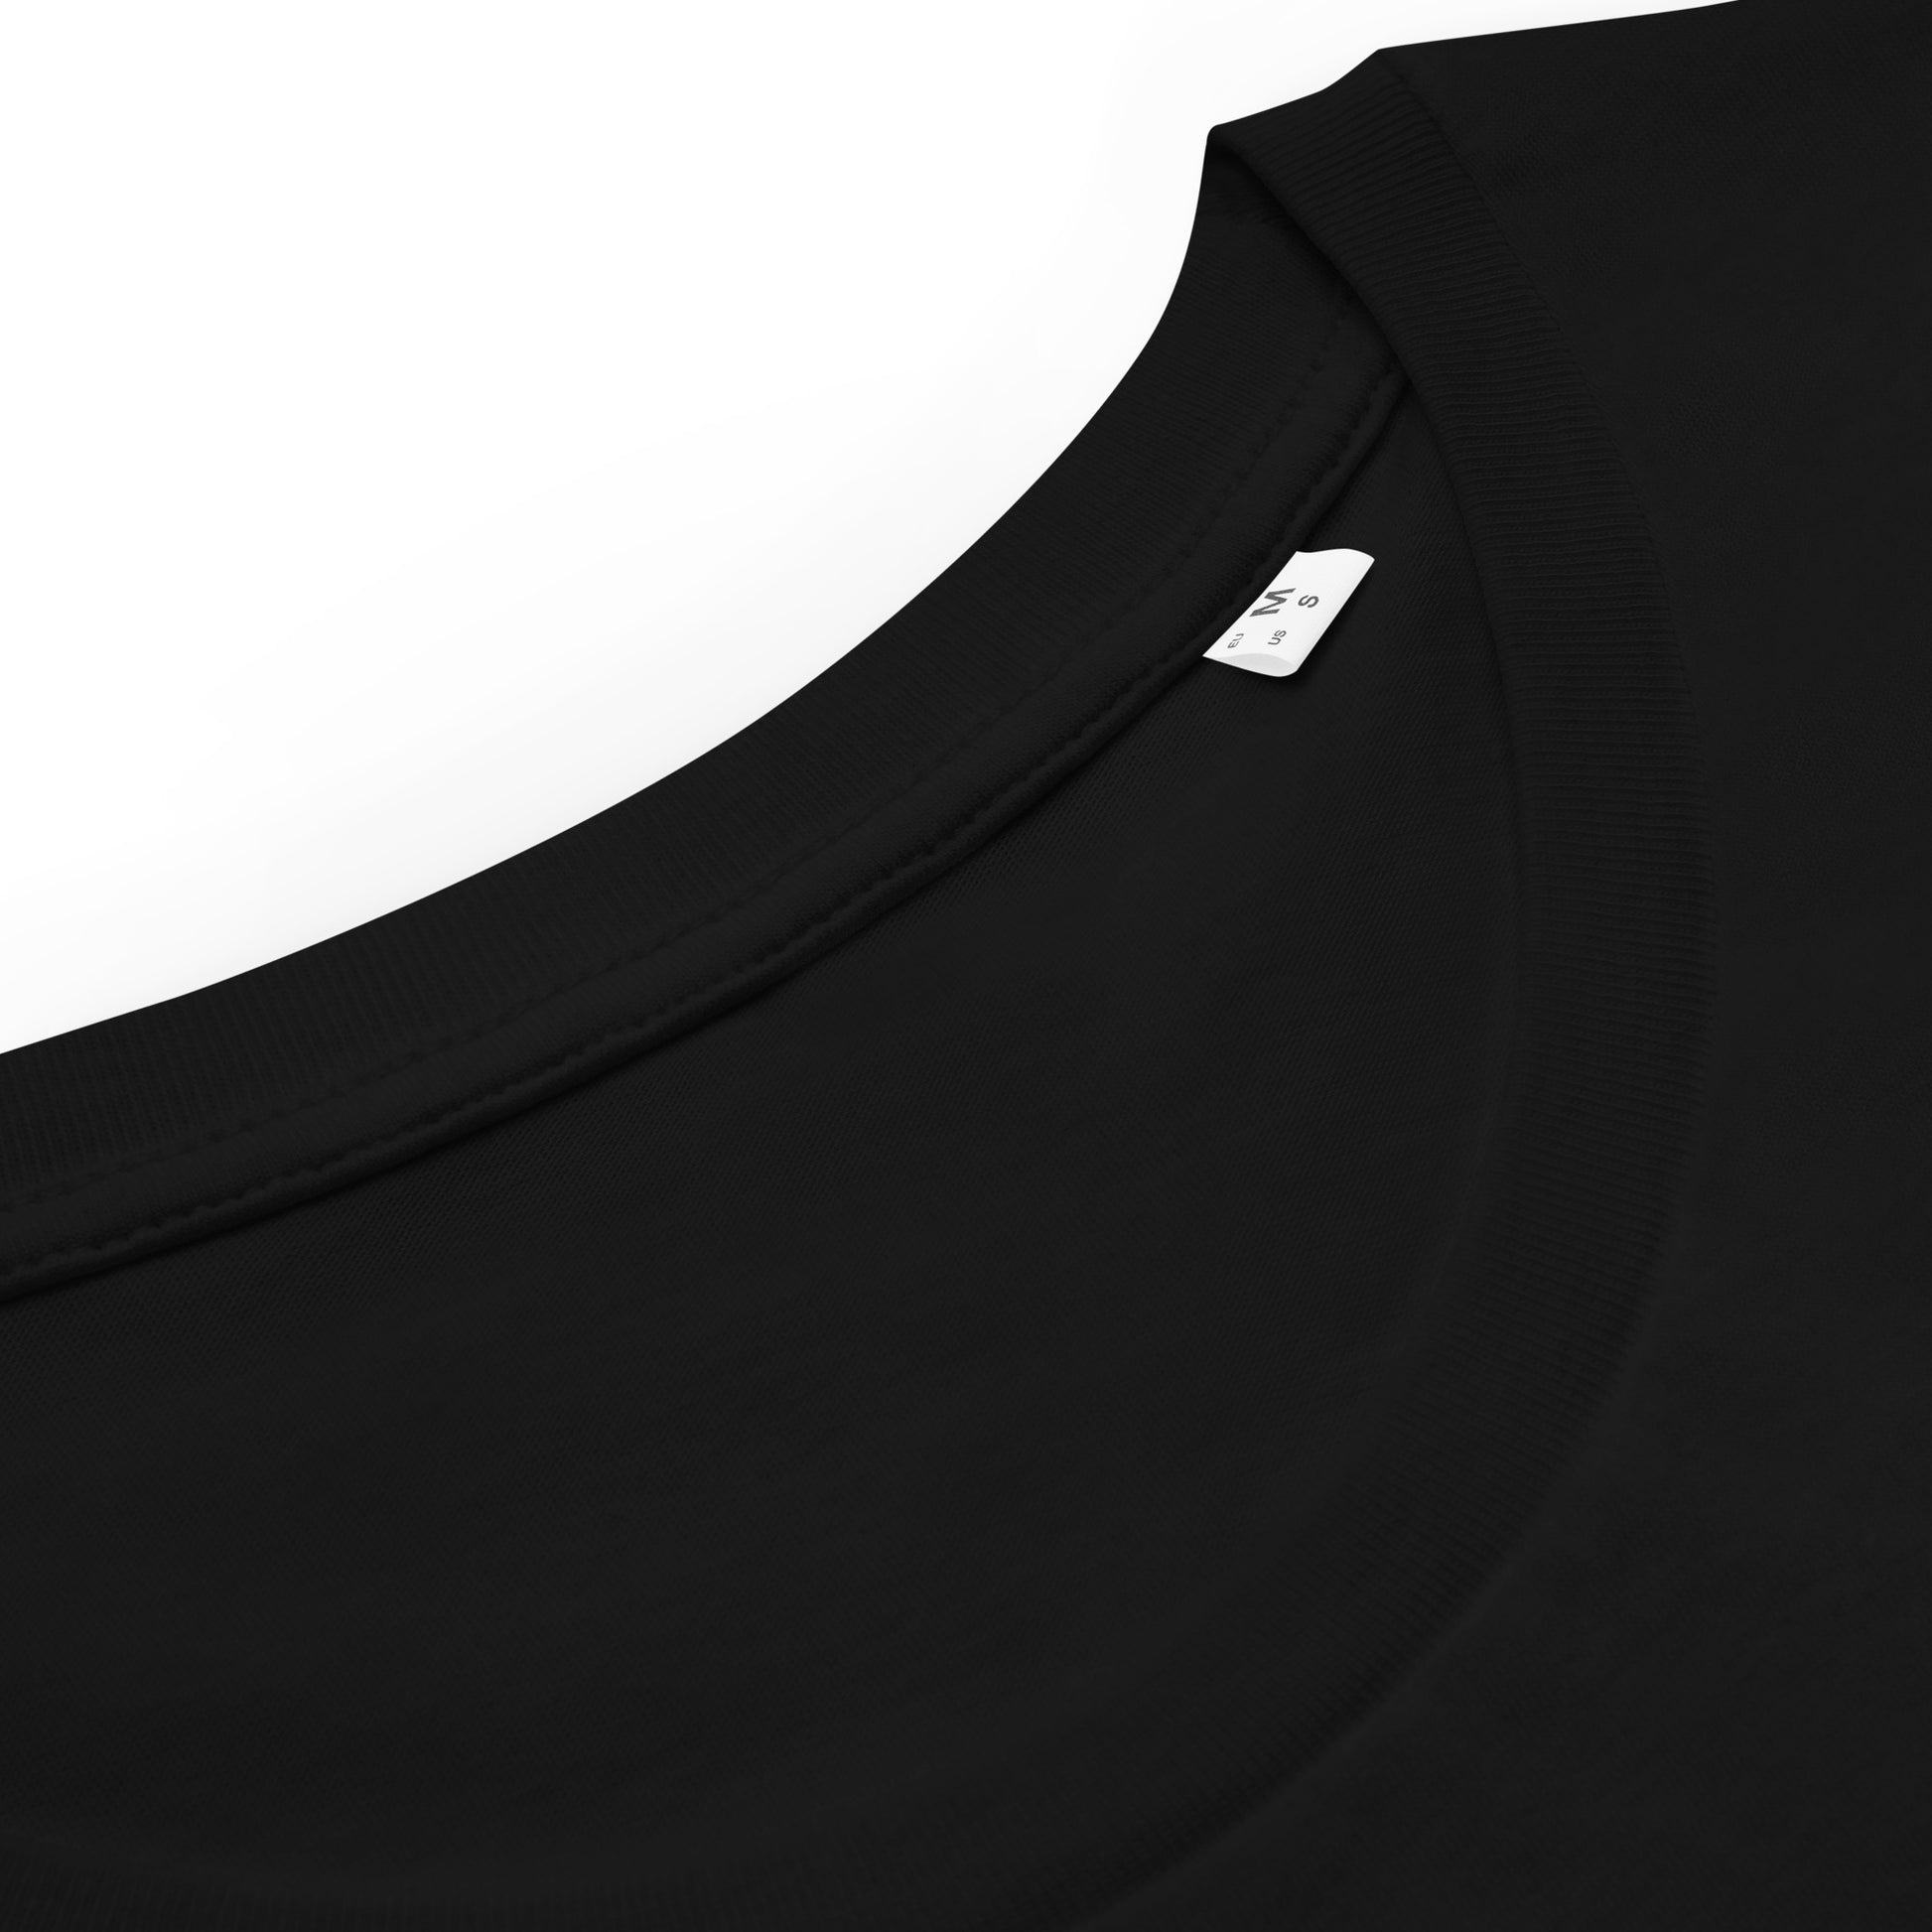 Ping Pong Platypus | Women's 100% Organic Cotton T Shirt collar detail